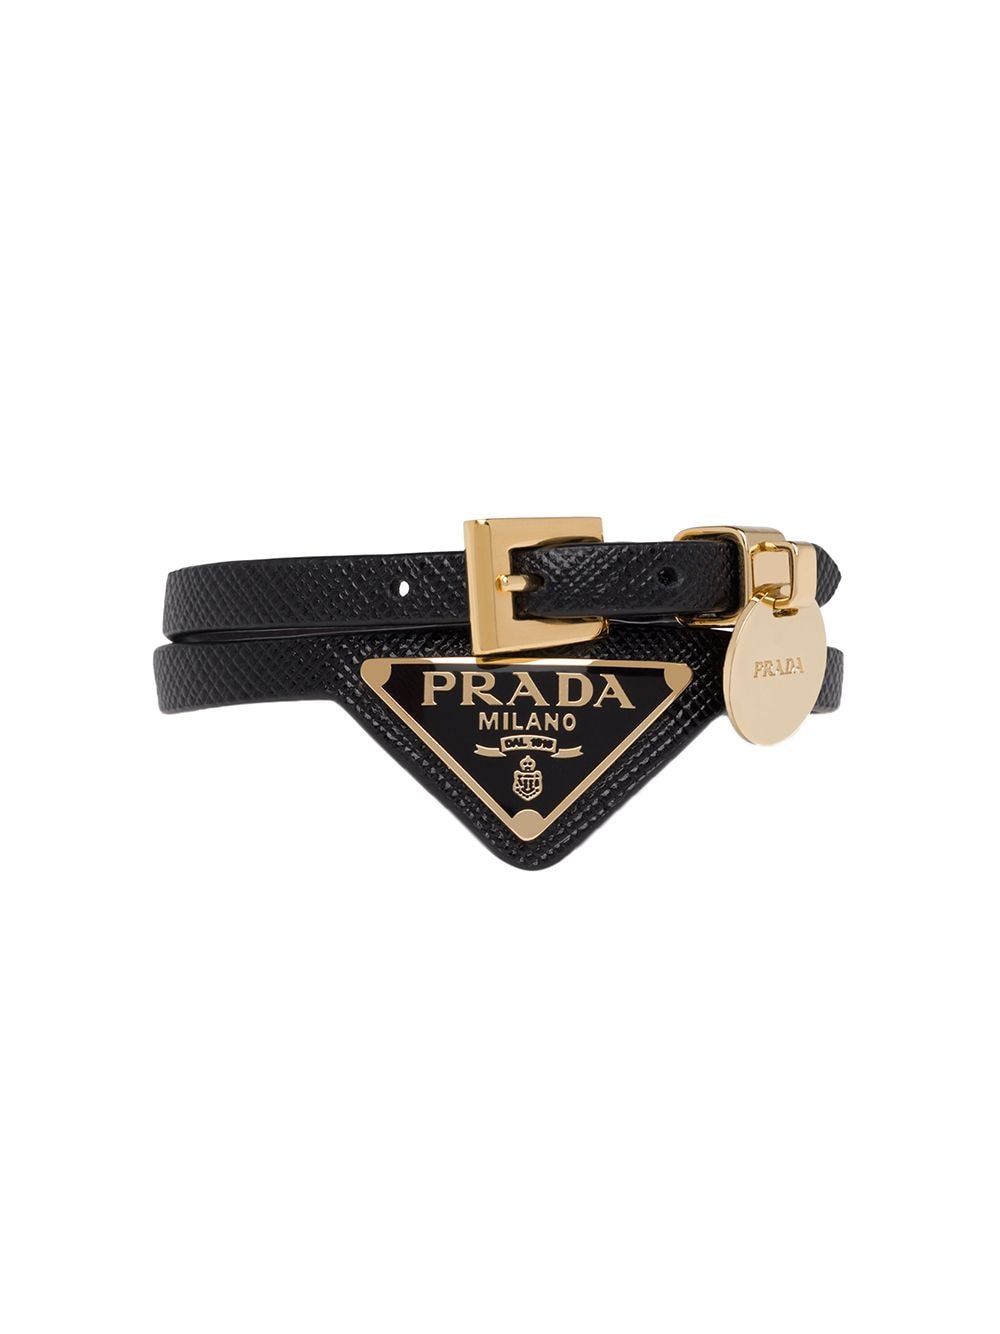 фото Prada браслет из сафьяновой кожи с металлическим логотипом